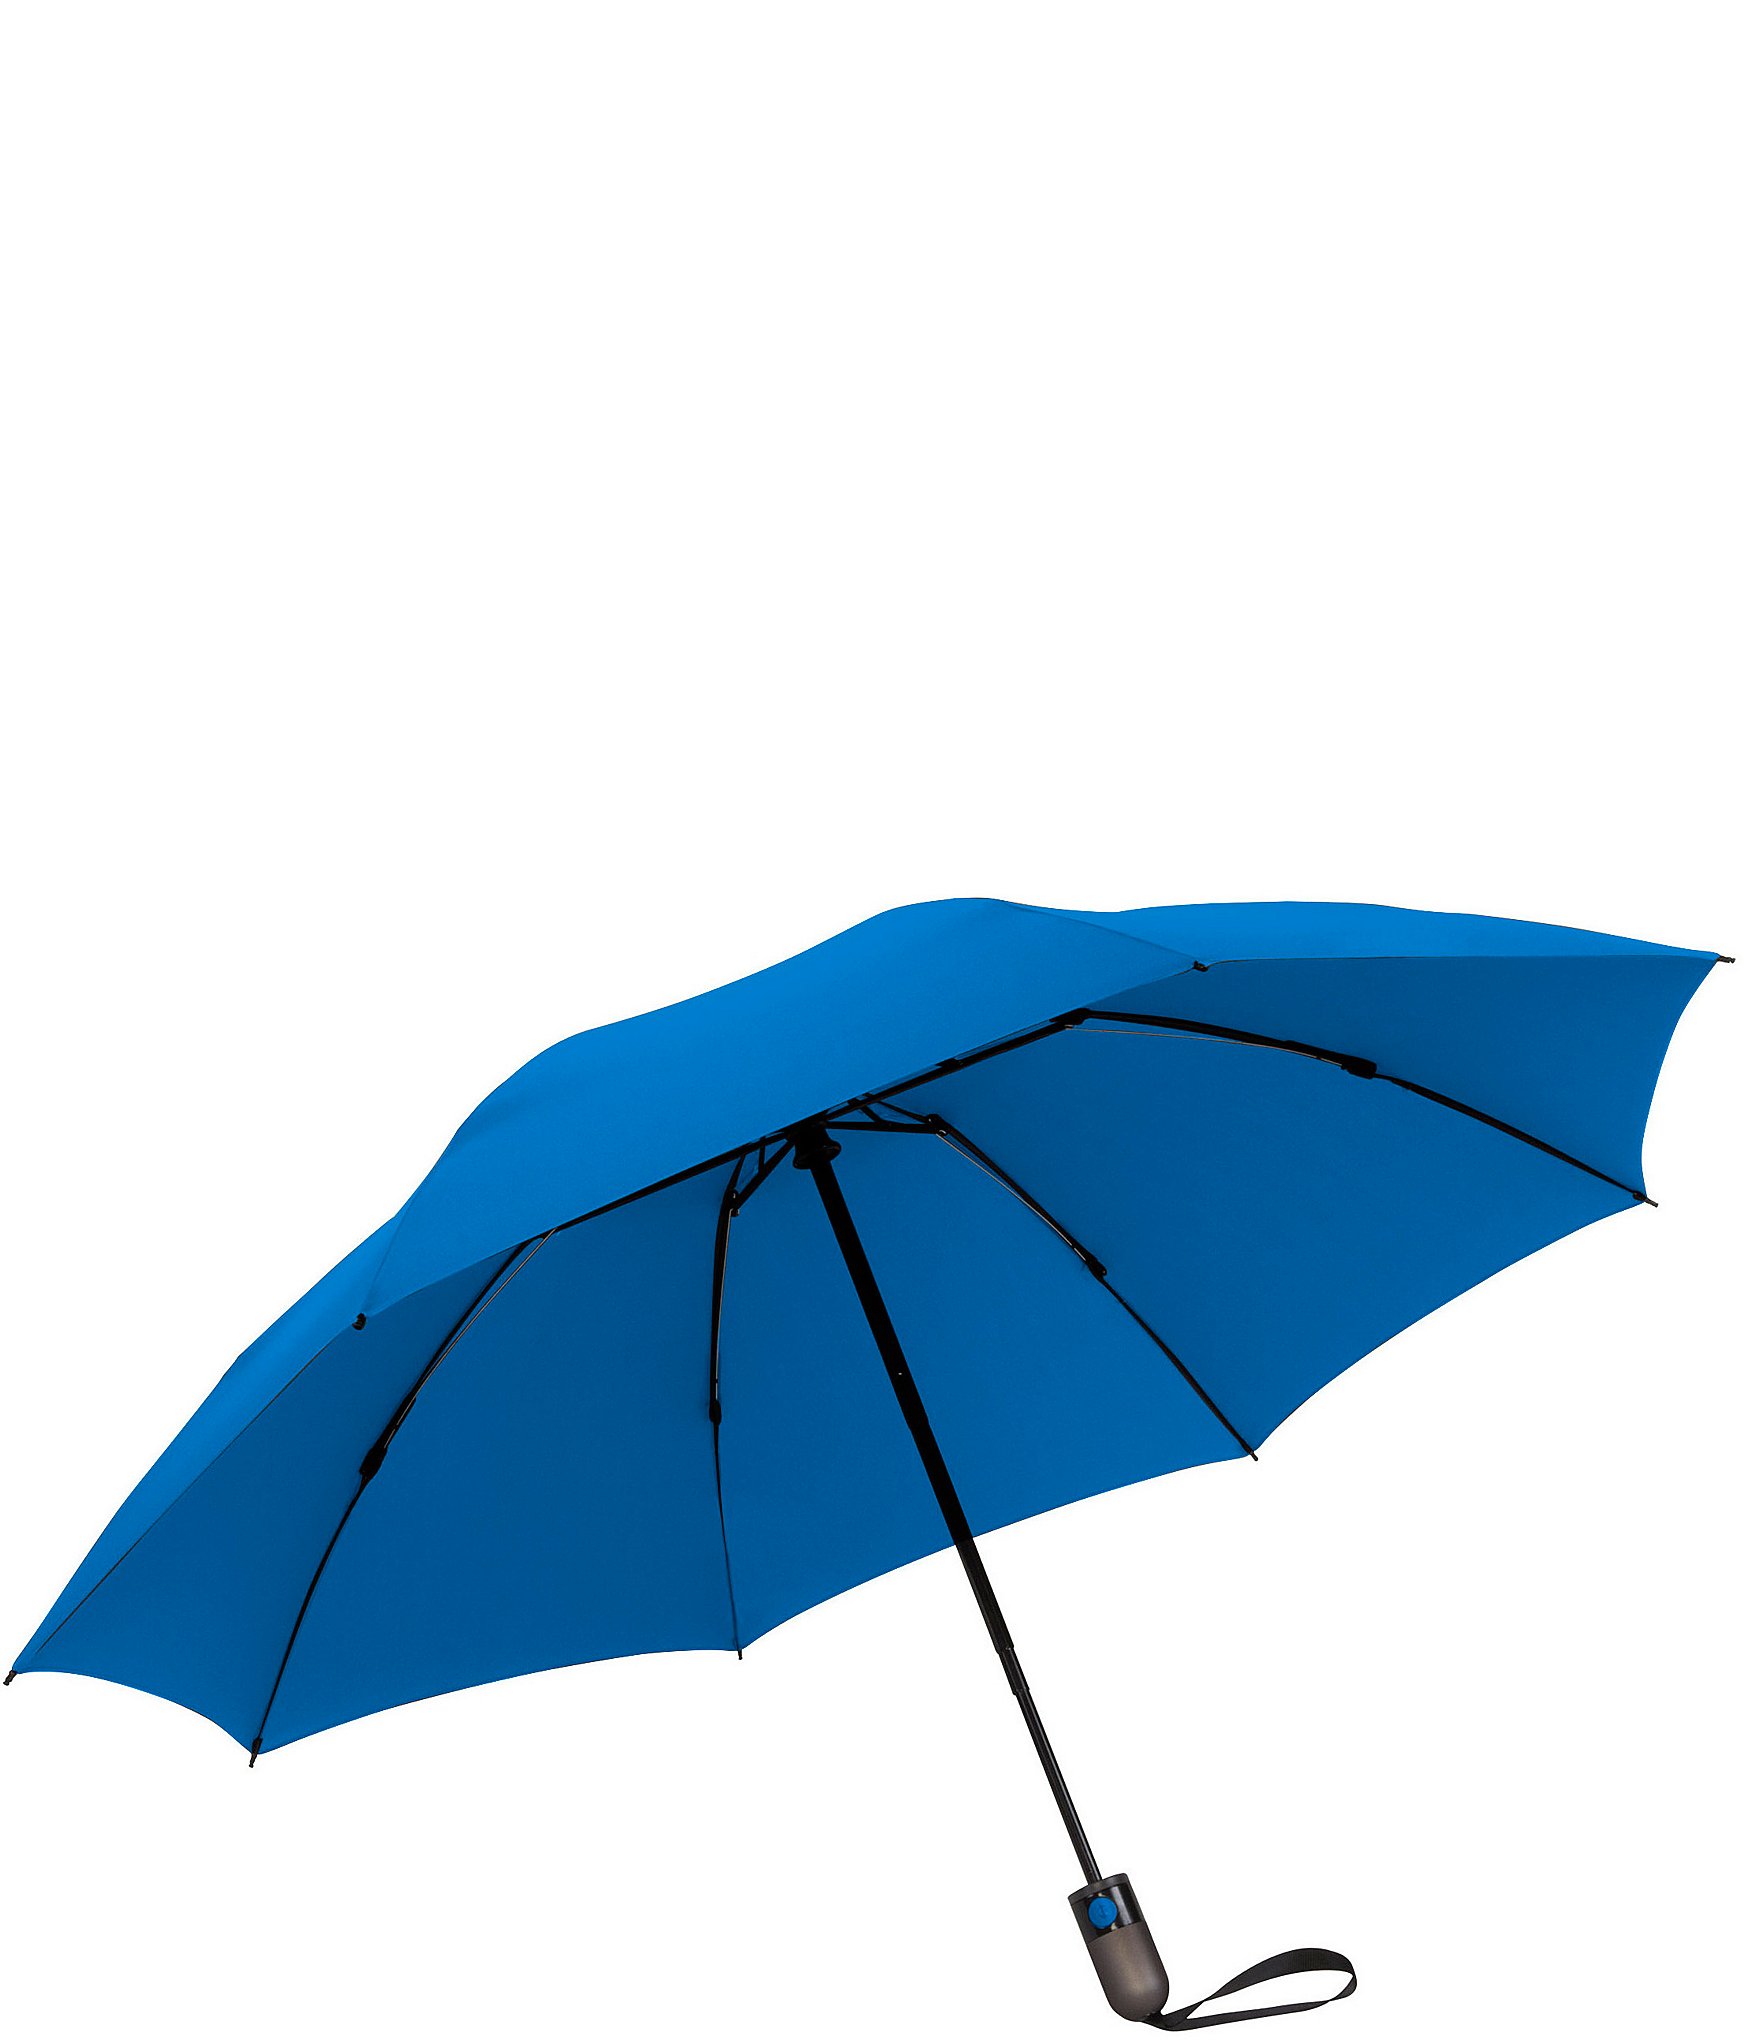 Brellashade Umbrella Bag Anti- Dust Reversible Umbrella Cover